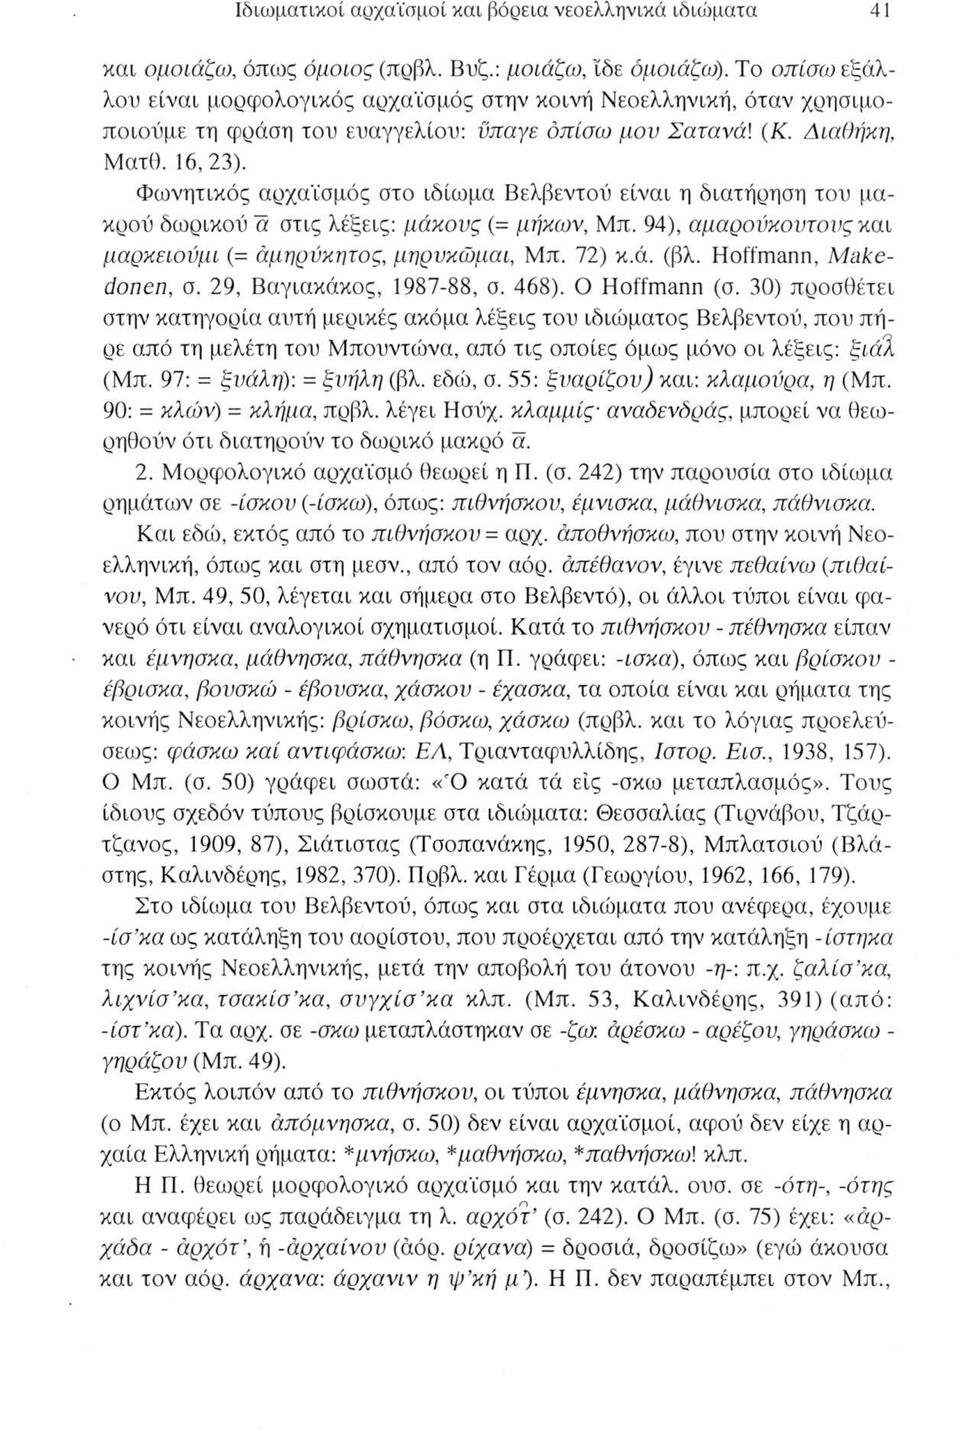 Φωνητικός αρχαϊσμός στο ιδίωμα Βελβεντού είναι η διατήρηση του μακρού δωρικού a στις λέξεις: μάκους (= μηκών, Μπ. 94), αμαρούκουτους και μαρκειονμι (= άμηρύκητος, μηρυκώμαι, Μπ. 72) κ.ά. (βλ.